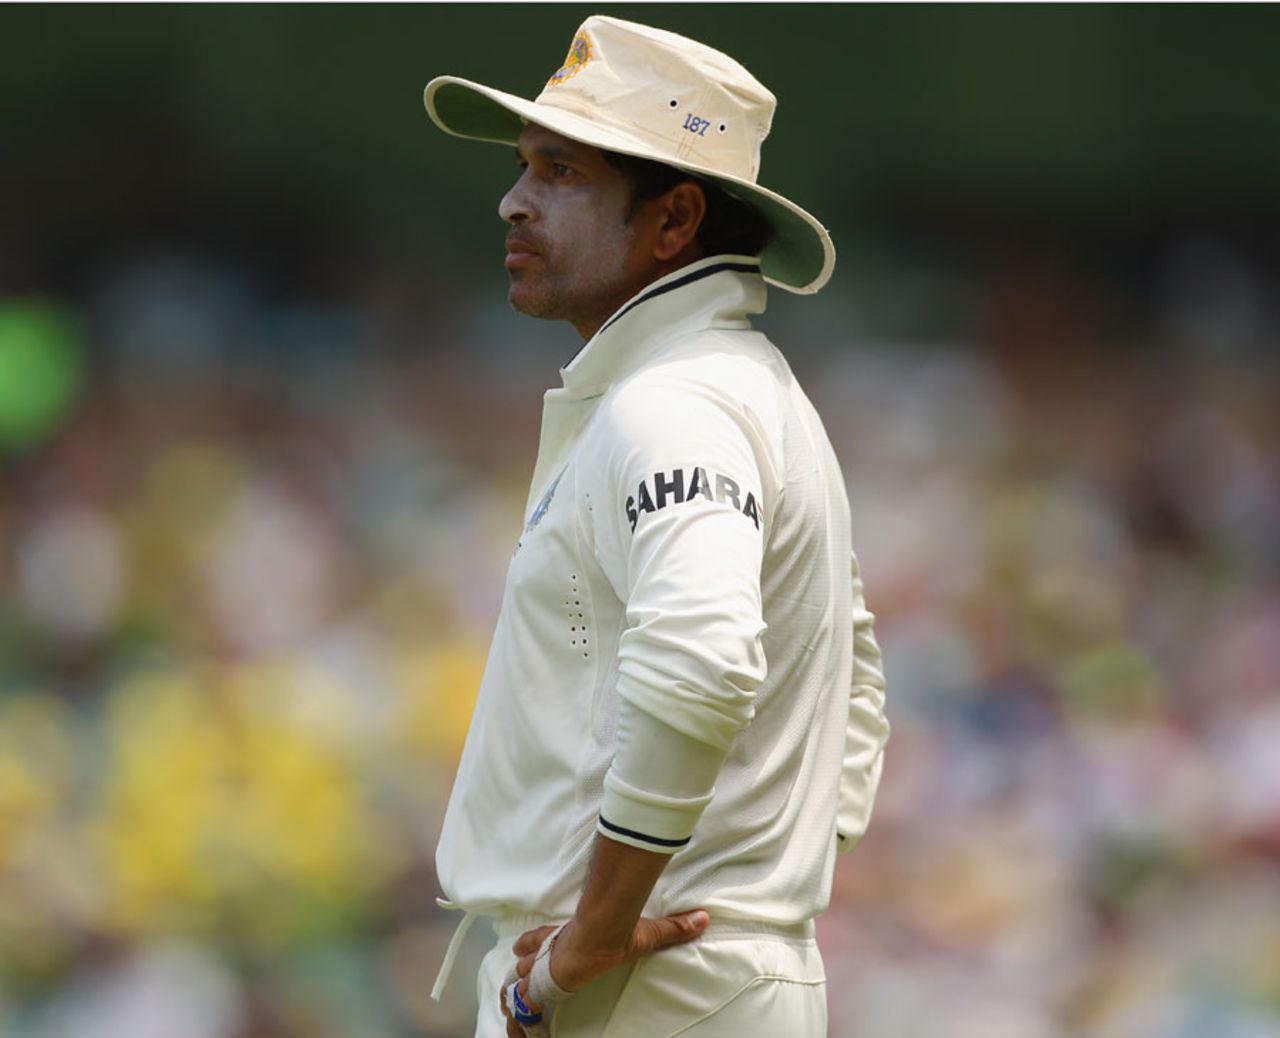 Sachin Tendulkar looks bemused as Australia plunder runs, Australia v India, 2nd Test, Sydney, 2nd day, January 4, 2012